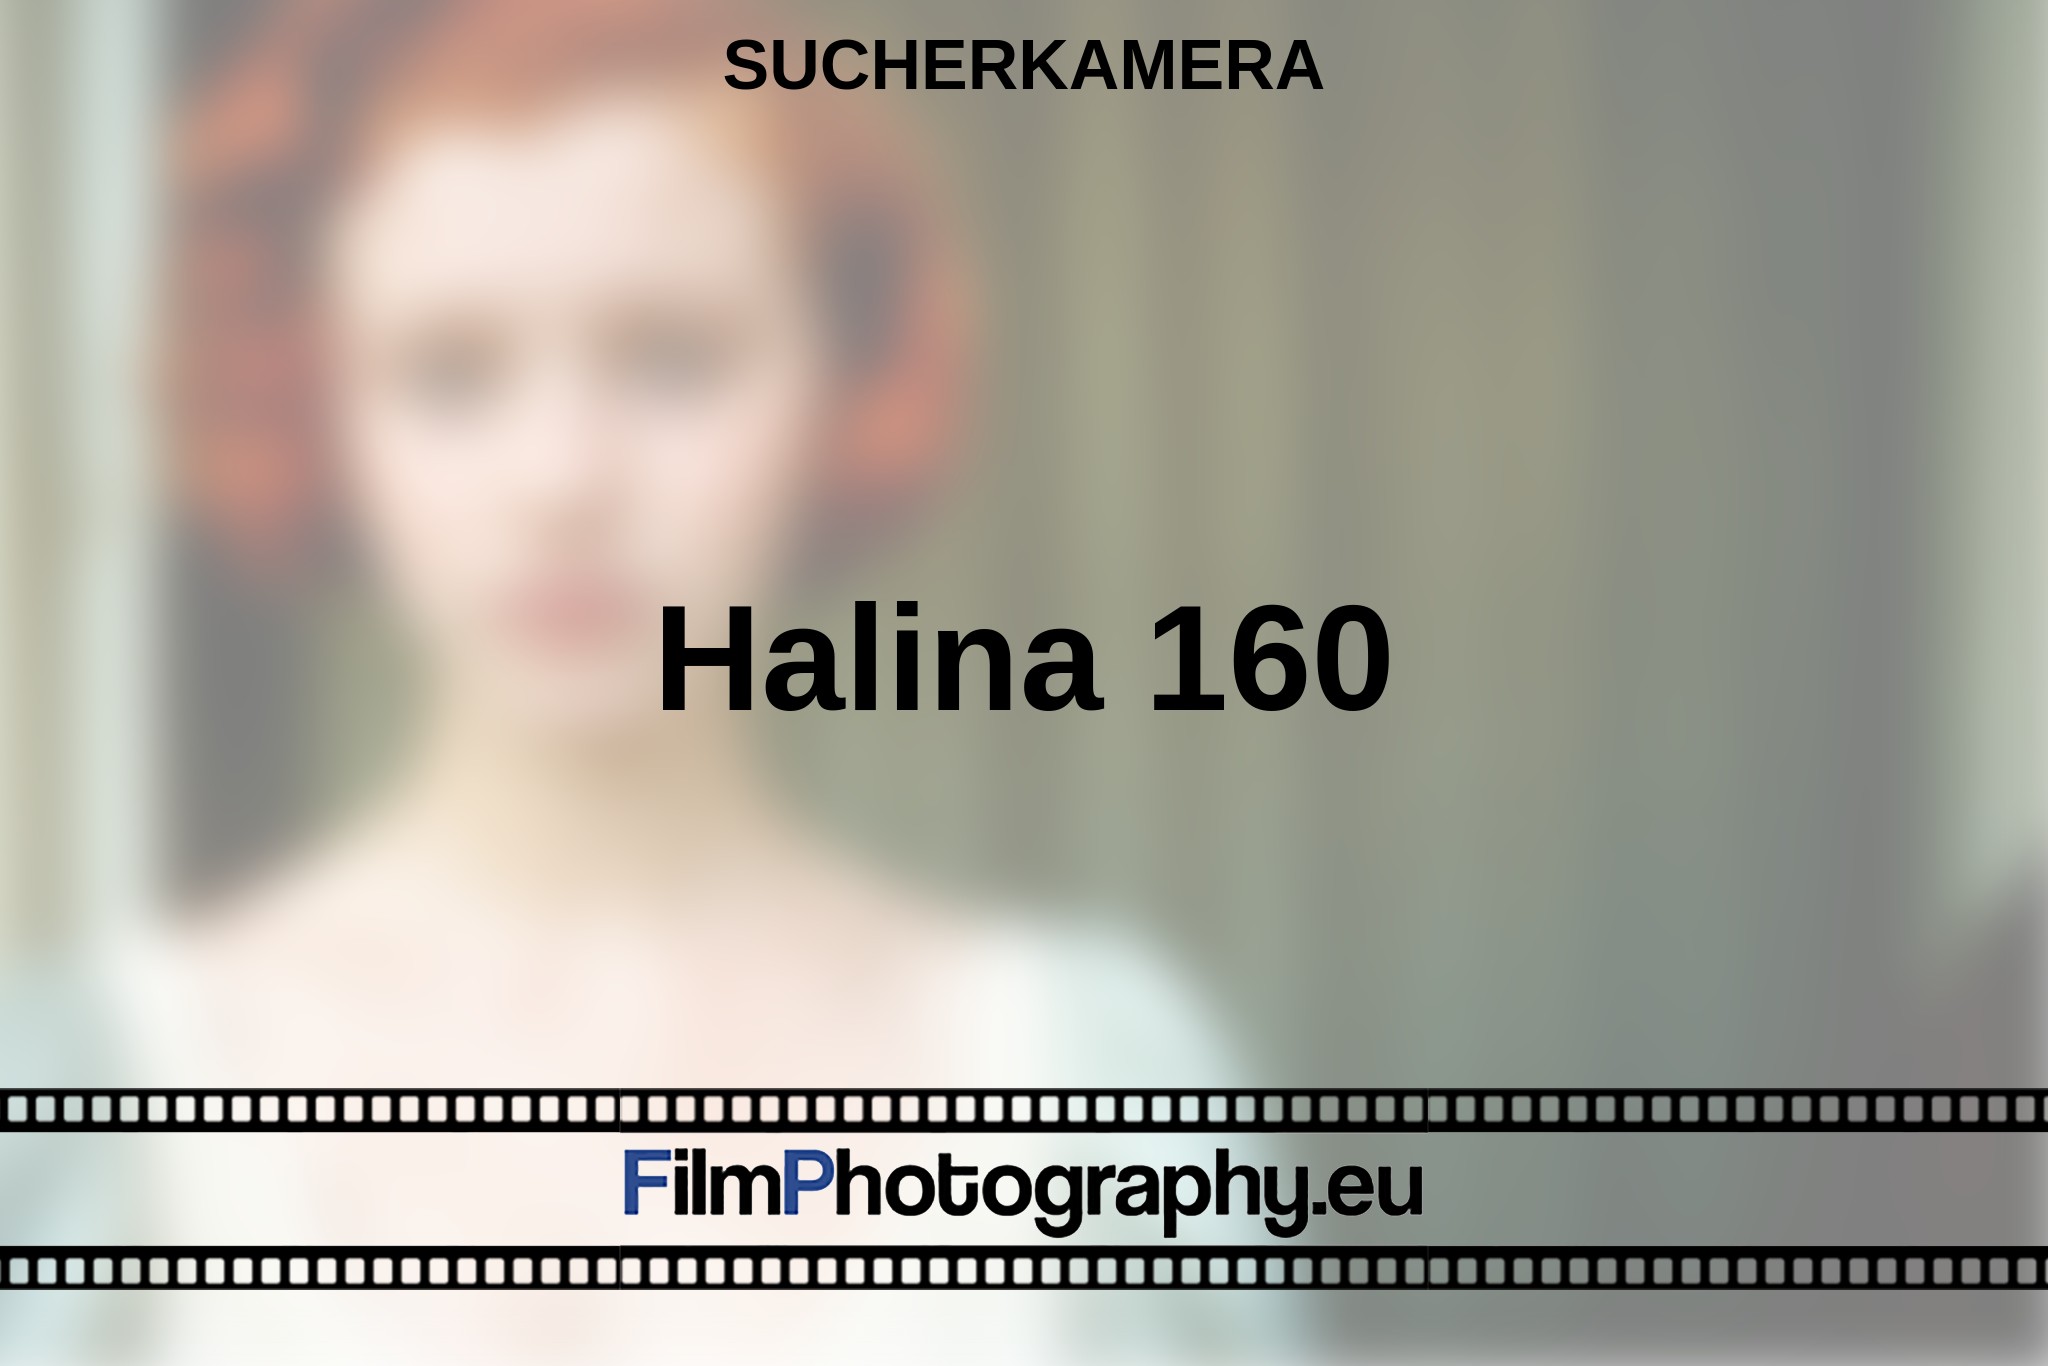 halina-160-sucherkamera-bnv.jpg